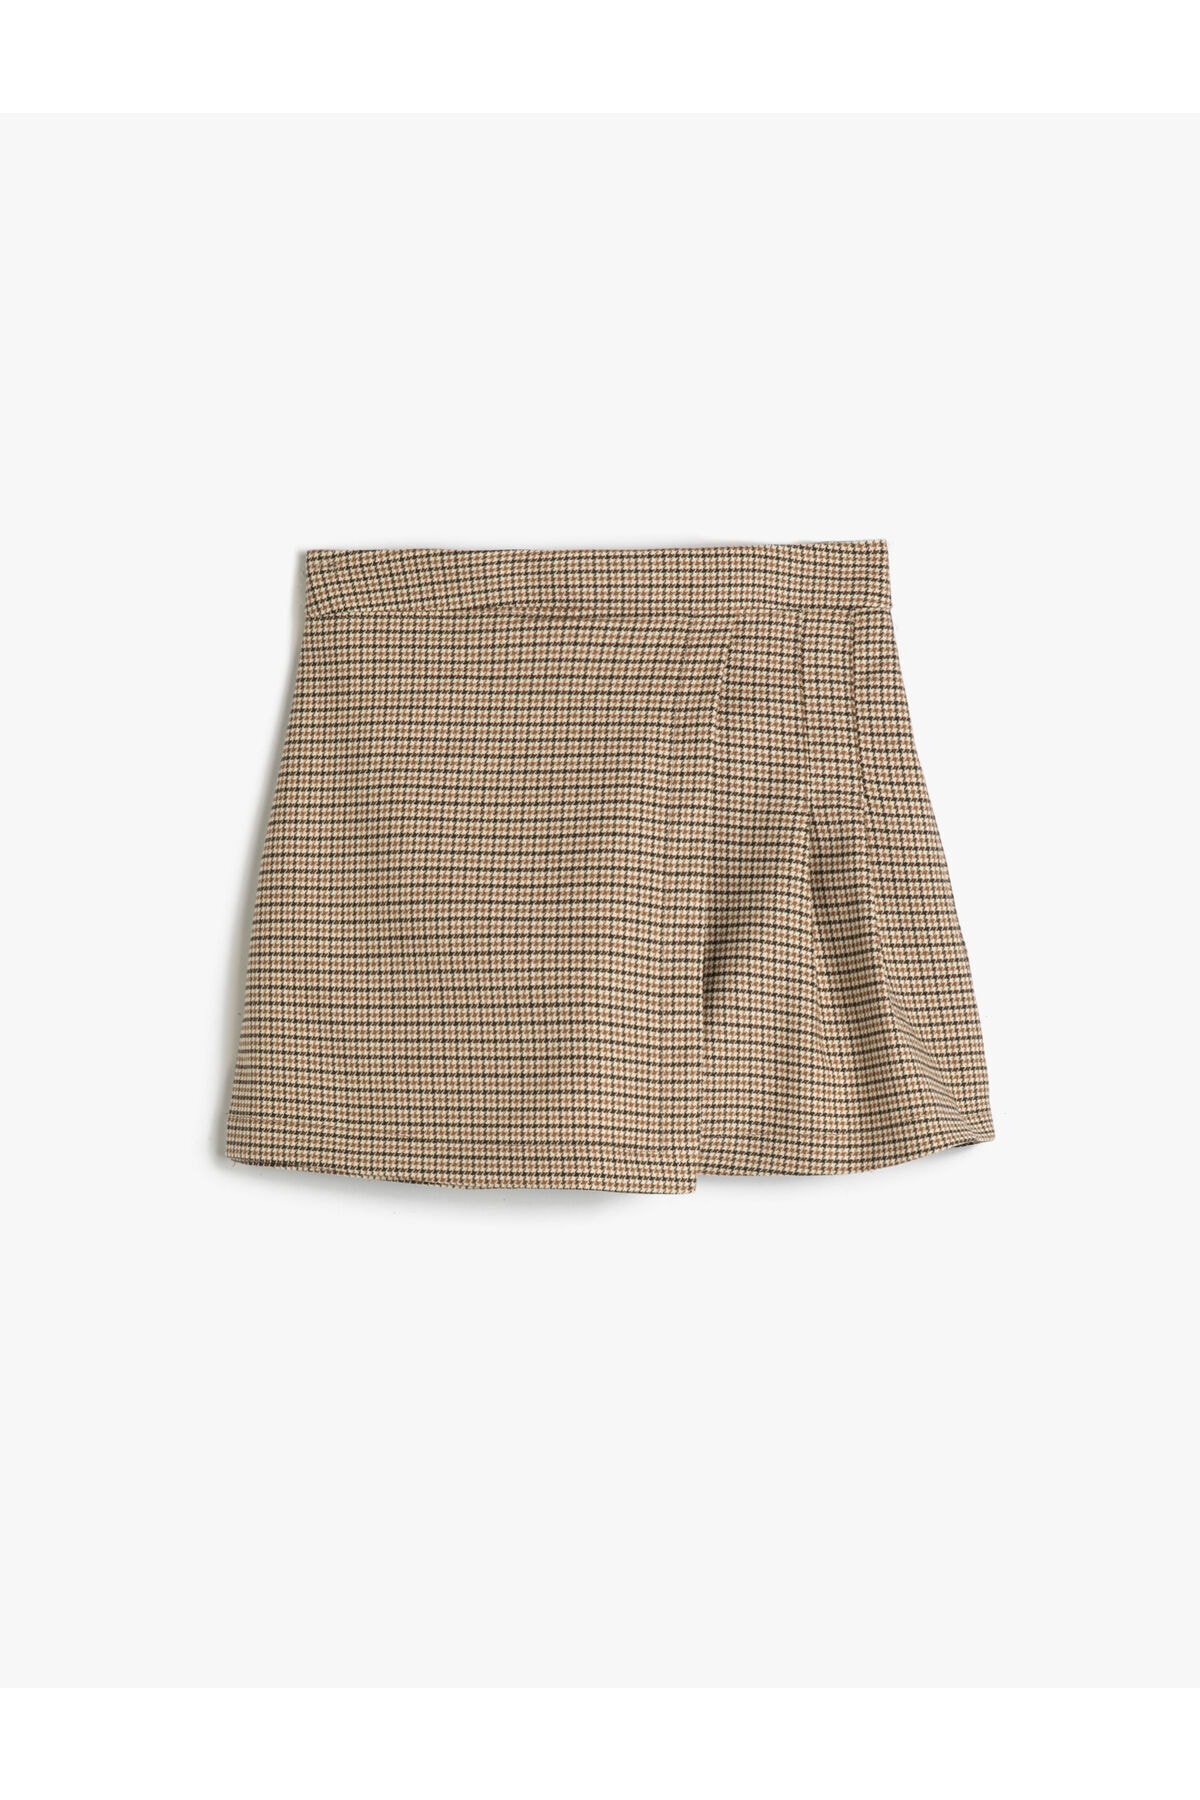 Levně Koton Girl's Shorts Skirt Pleated Double Breasted Elastic Waist Camel Hair